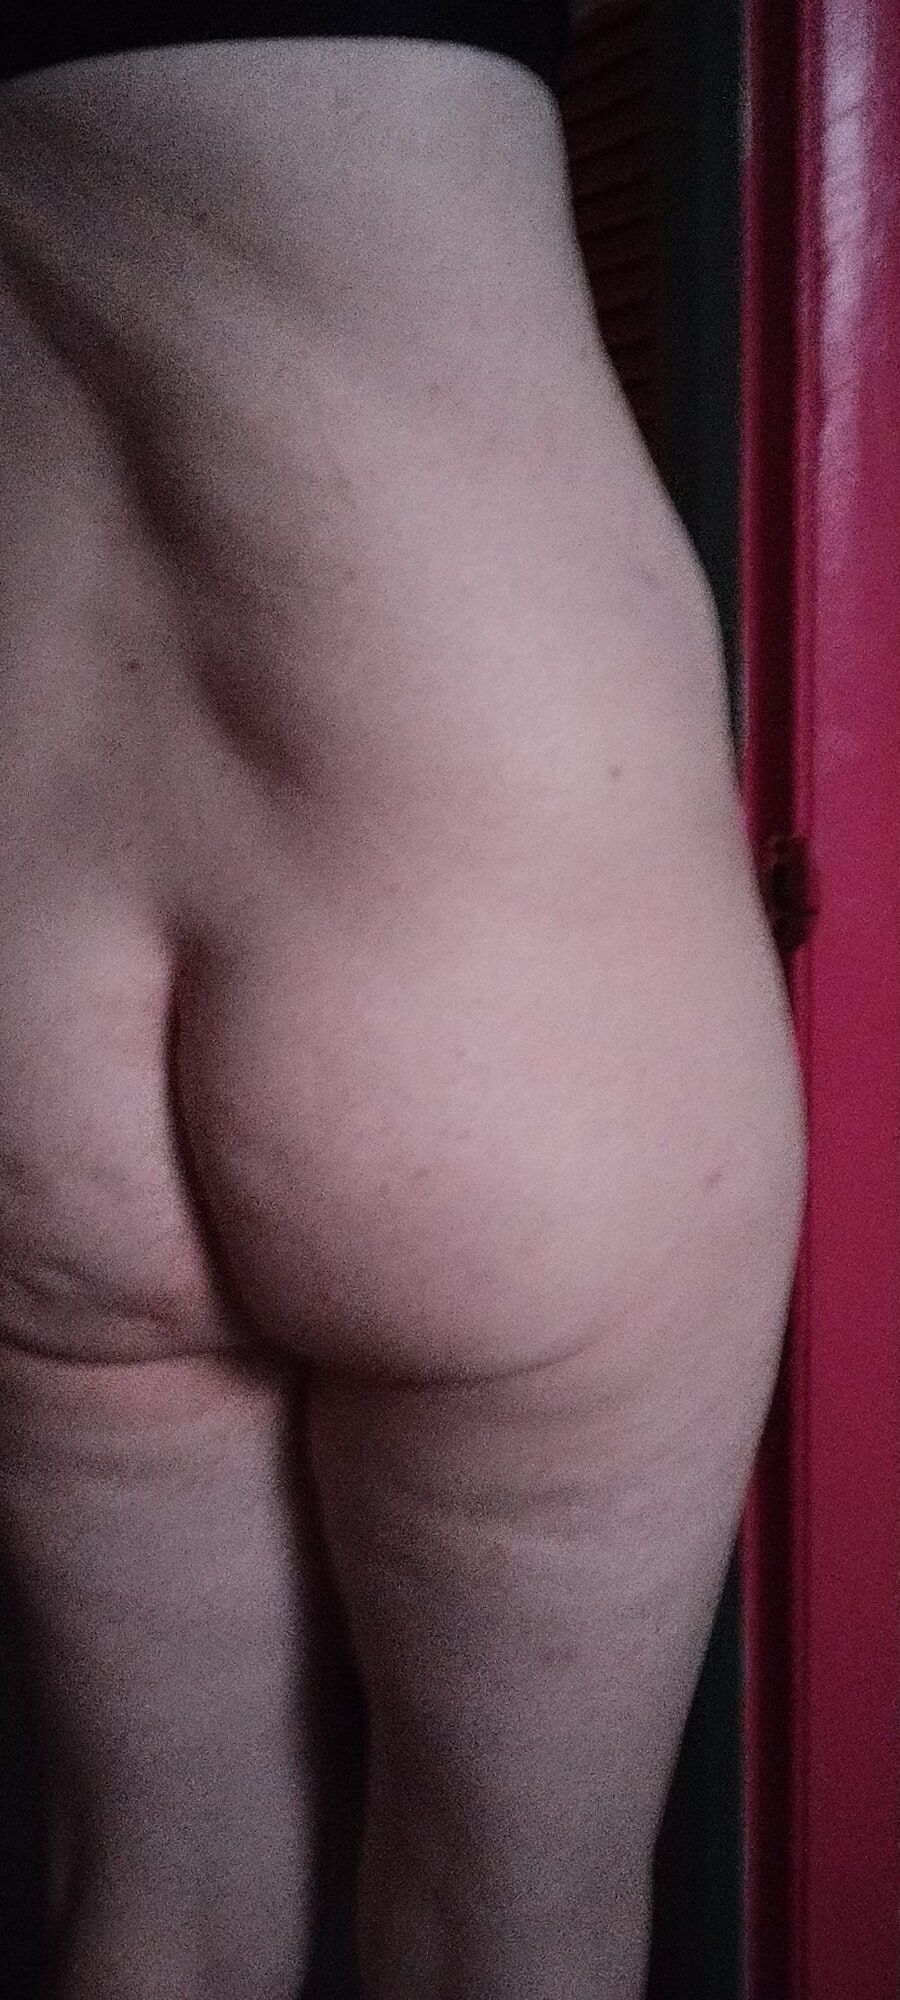 My Ass #23